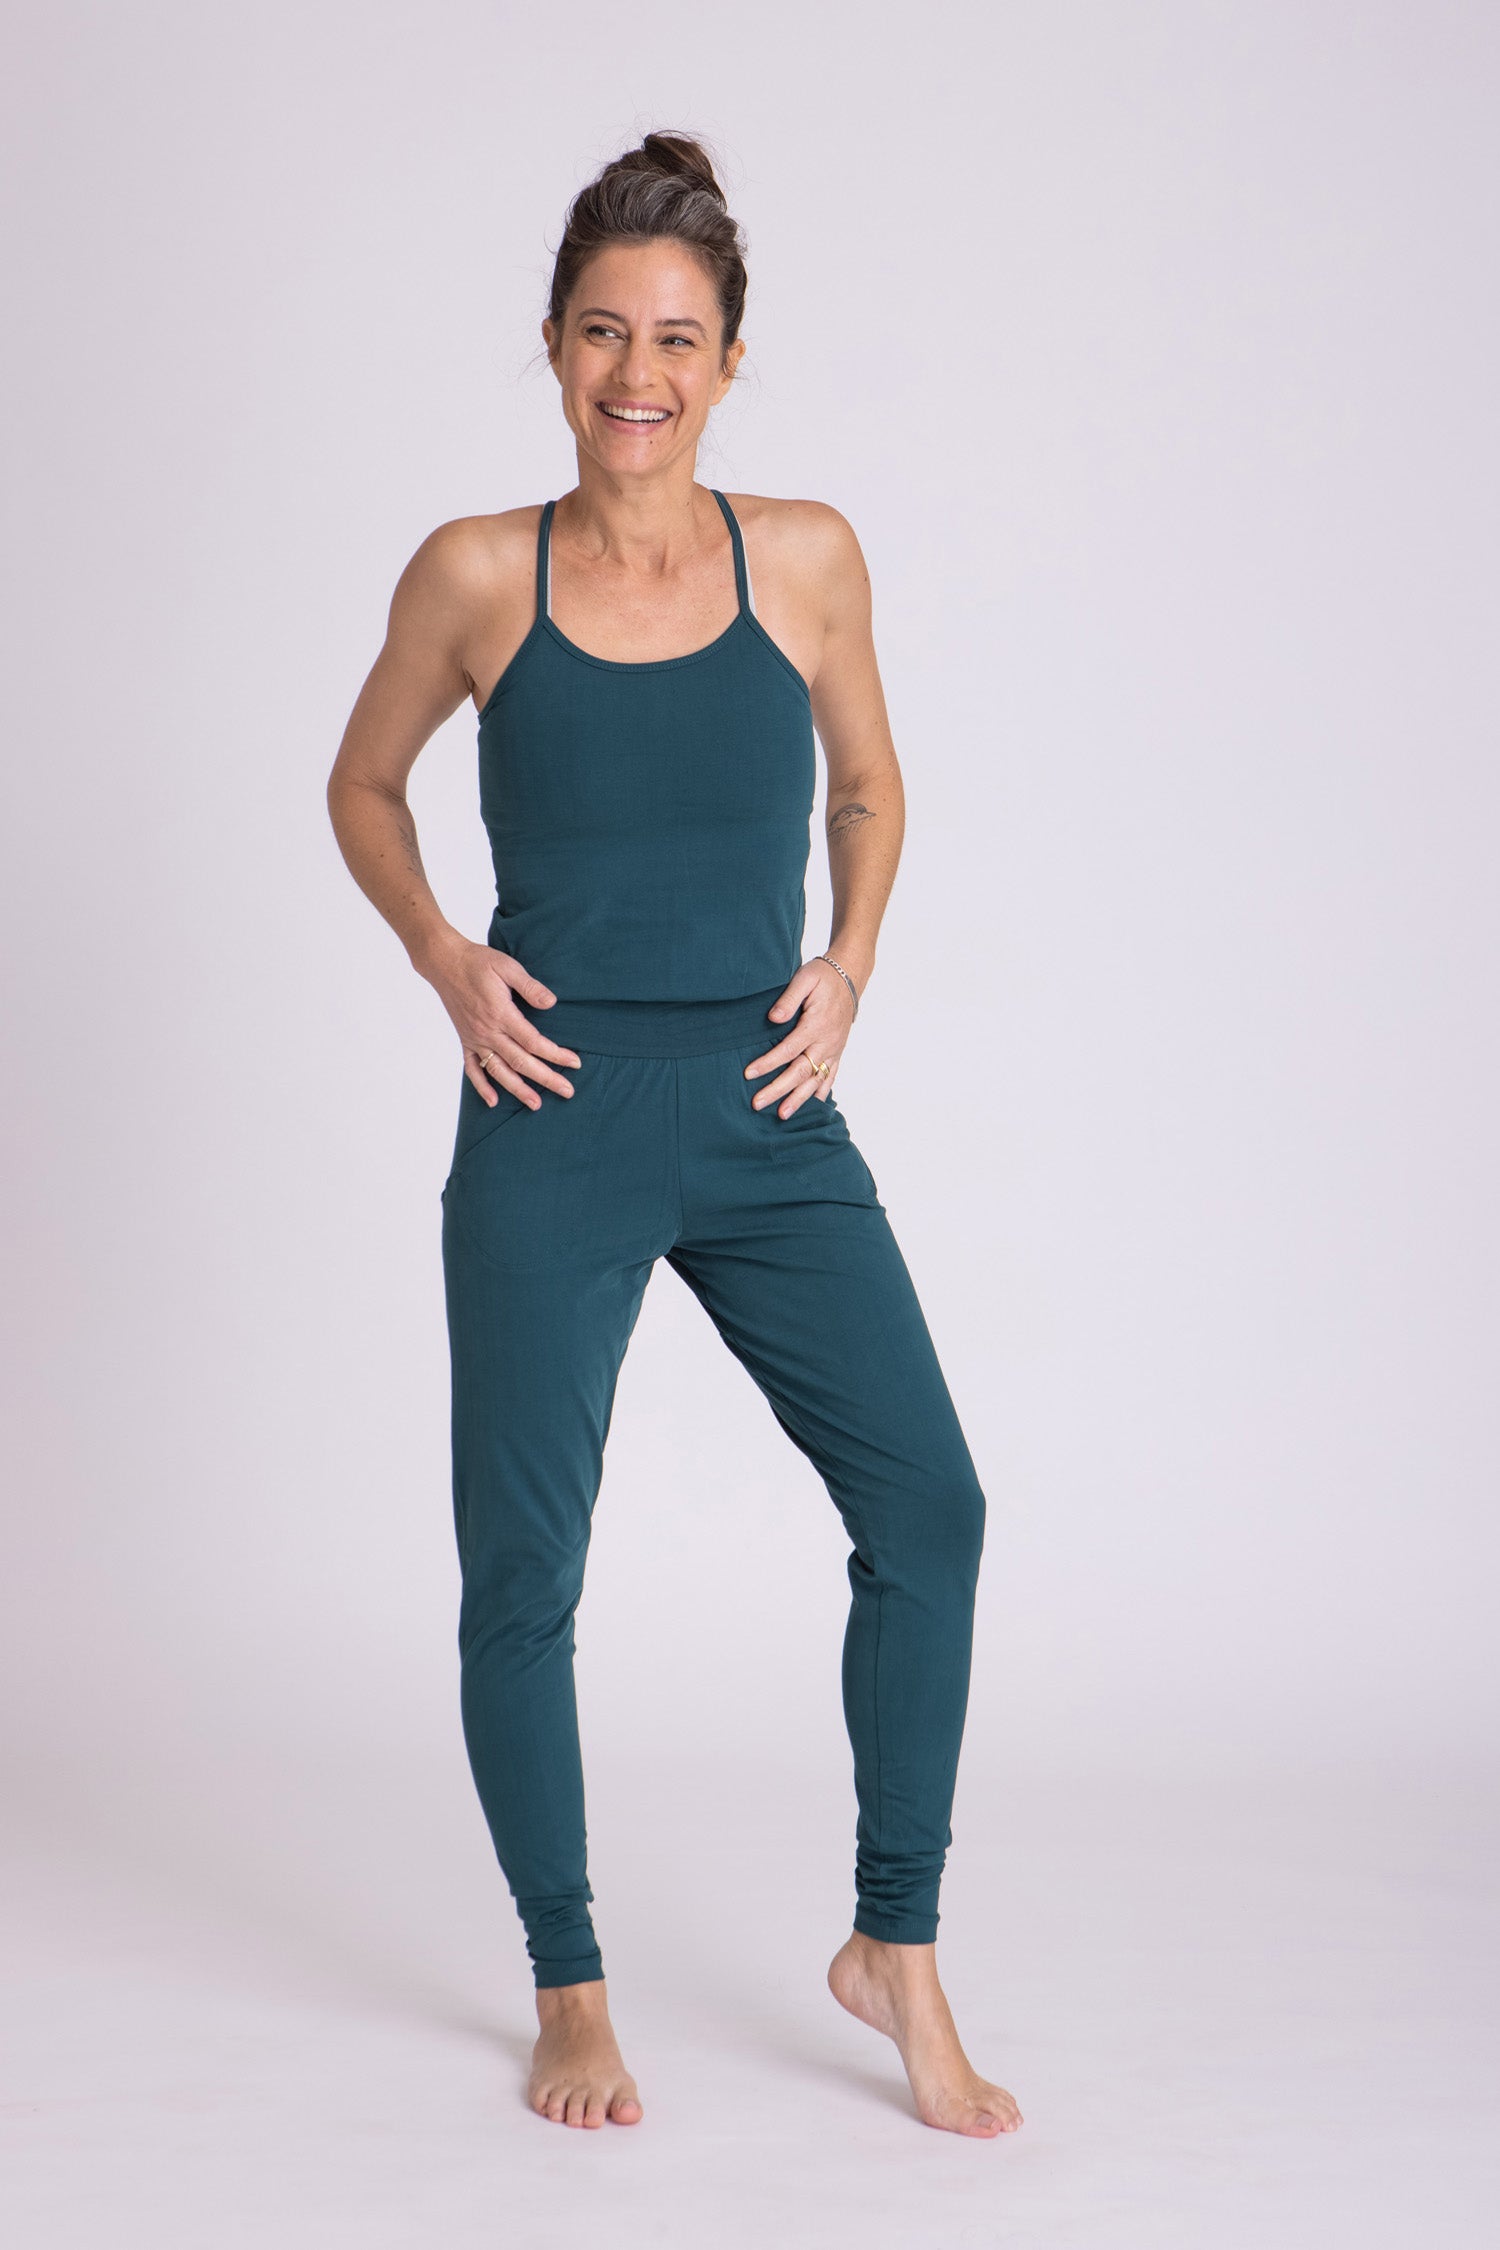 Prana Elixir Jumpsuit Yoga-Overall - Yoga top Women's, Buy online